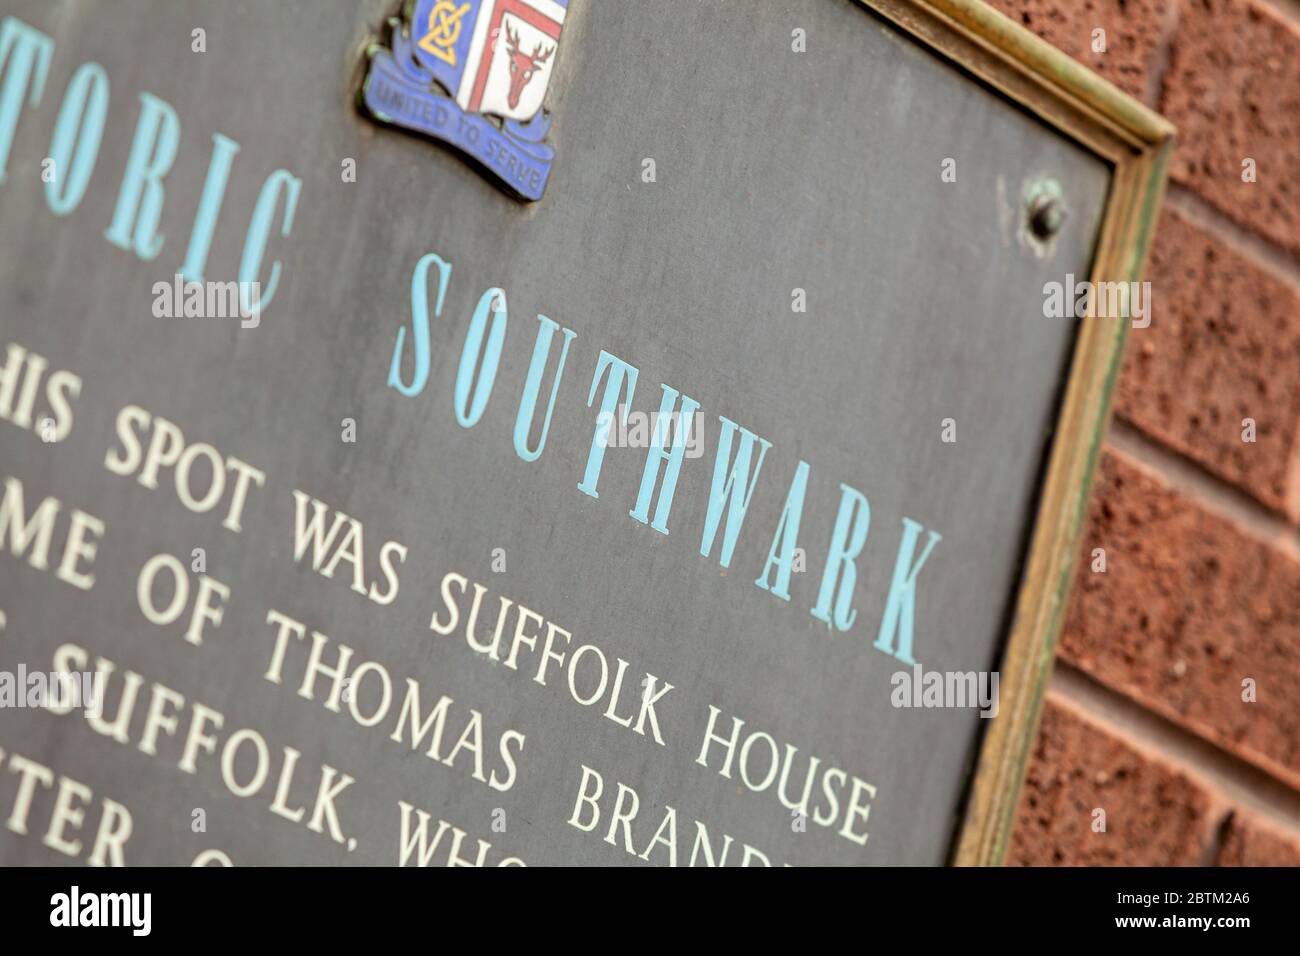 Panneau d'information sur un mur détaillant l'emplacement historique de Suffolk House, dans le quartier de Southwark à Londres Banque D'Images